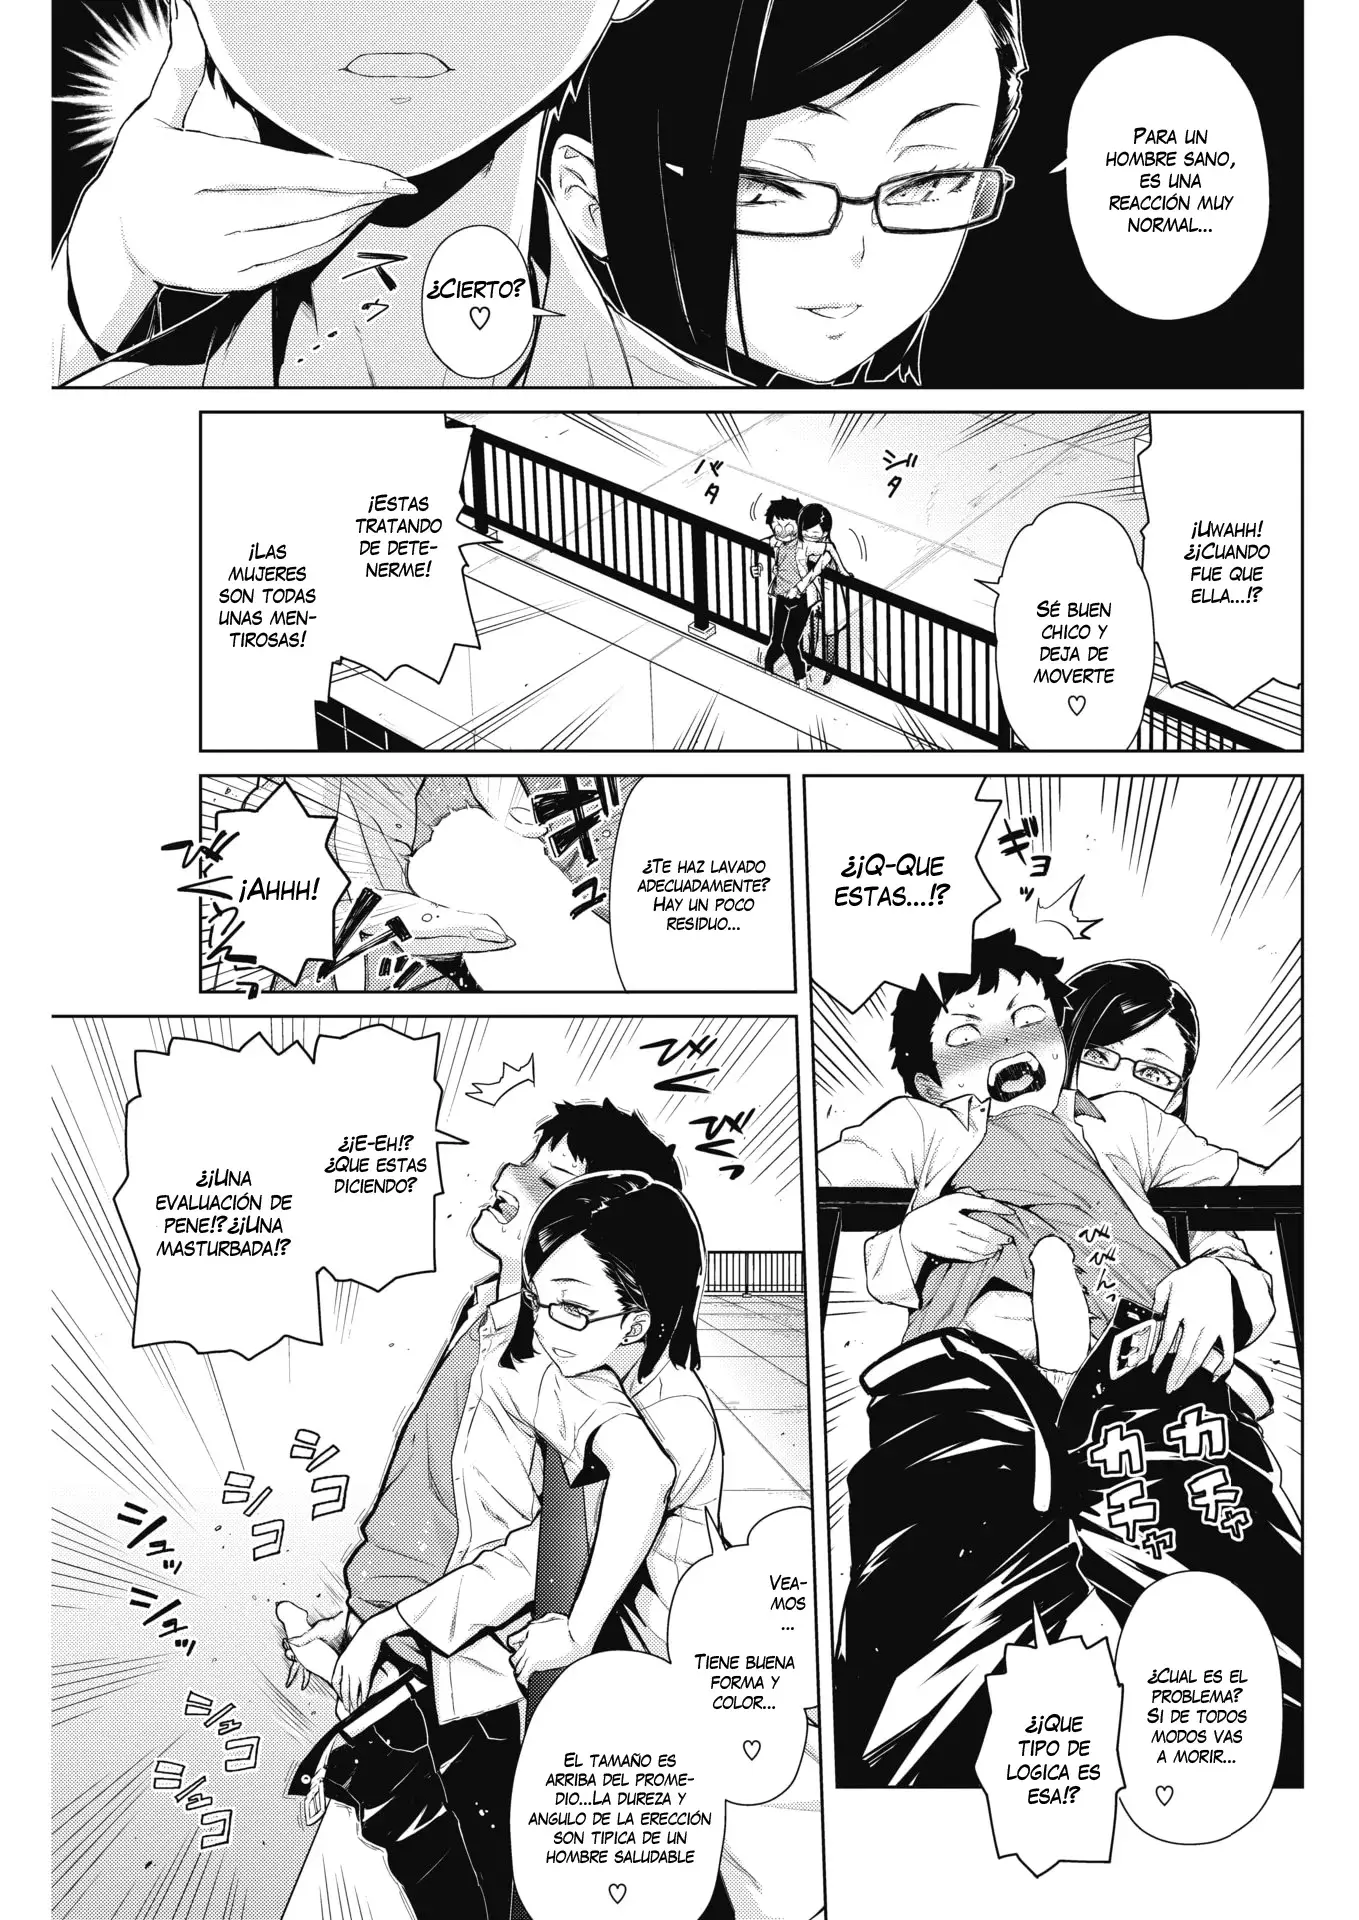 Lee manga hentai enfermera de artista Teri Terio. Joven estudiante es salvado por la enfermera del colegio a la que rompe la vagina. Disfruta de doujins adulto maduras en español gratis en la web que recopila comics porno nipones de la red.